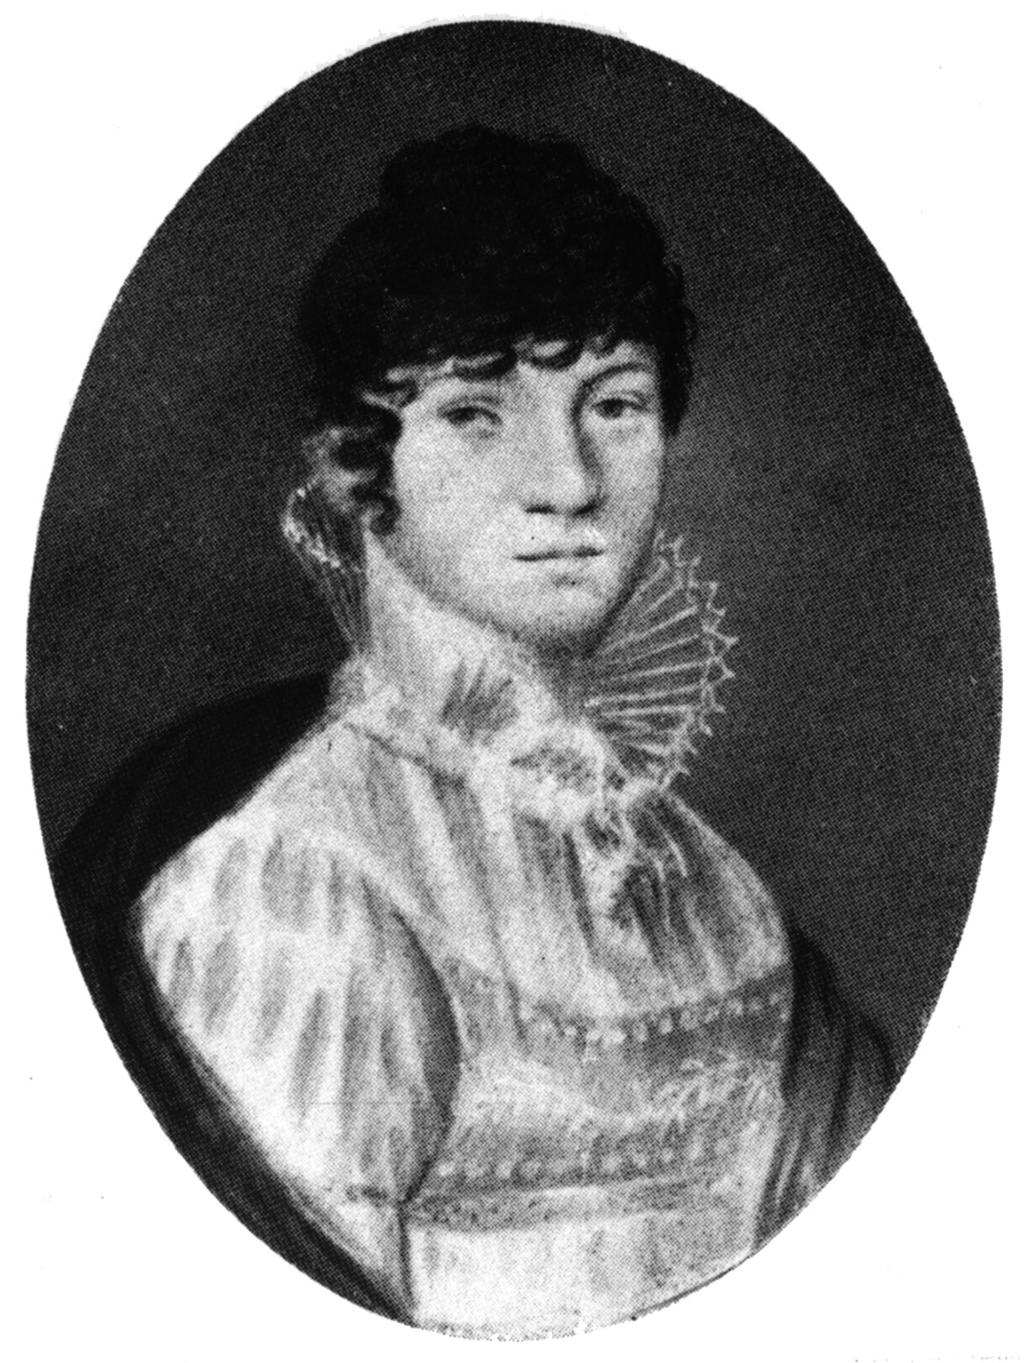 ΟΙ ΑΜΑΡΤΊΕΣ ΤΟΥ ΠΑΤΈΡΑ 23 Η Γιοχάνα Σοπενχάουερ (1766-1838), το γένος